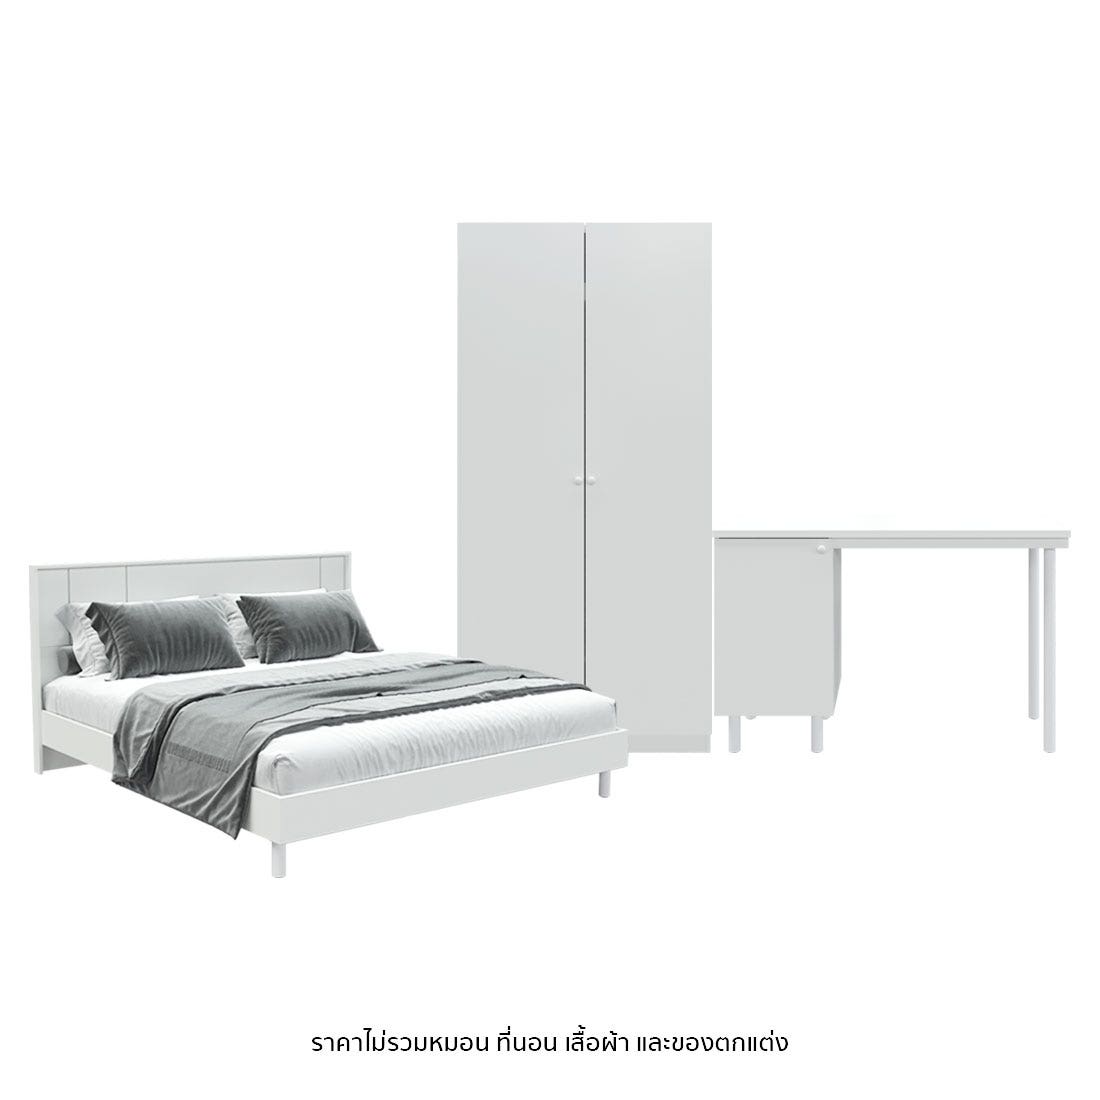 ชุดห้องนอน 6 ฟุต รุ่น Pearliz & ตู้ Blox 100 ซม. พร้อม โต๊ะทำงาน 120 ซม. สีขาว01